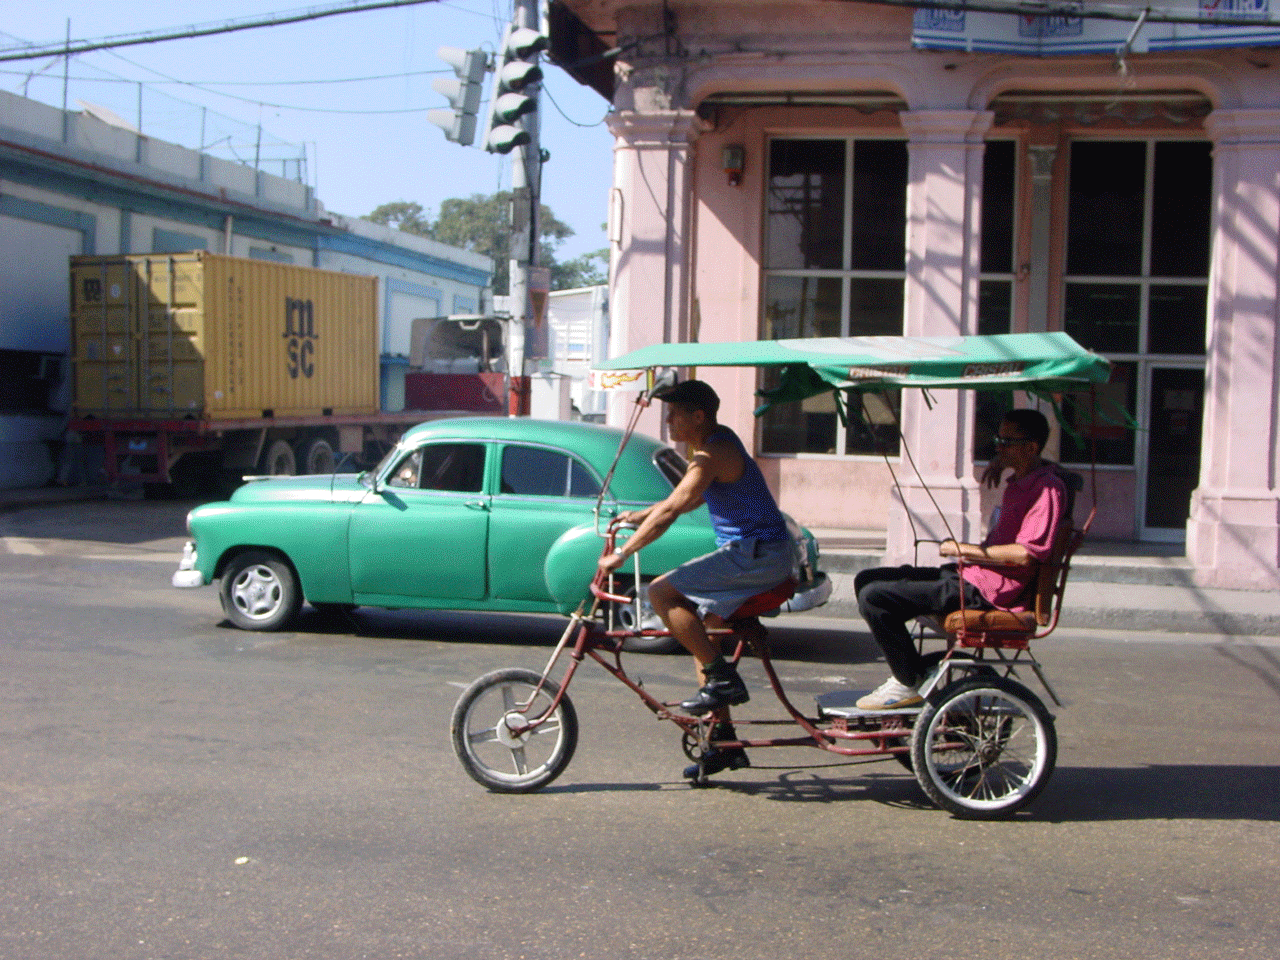 Vintage appeal in Havana